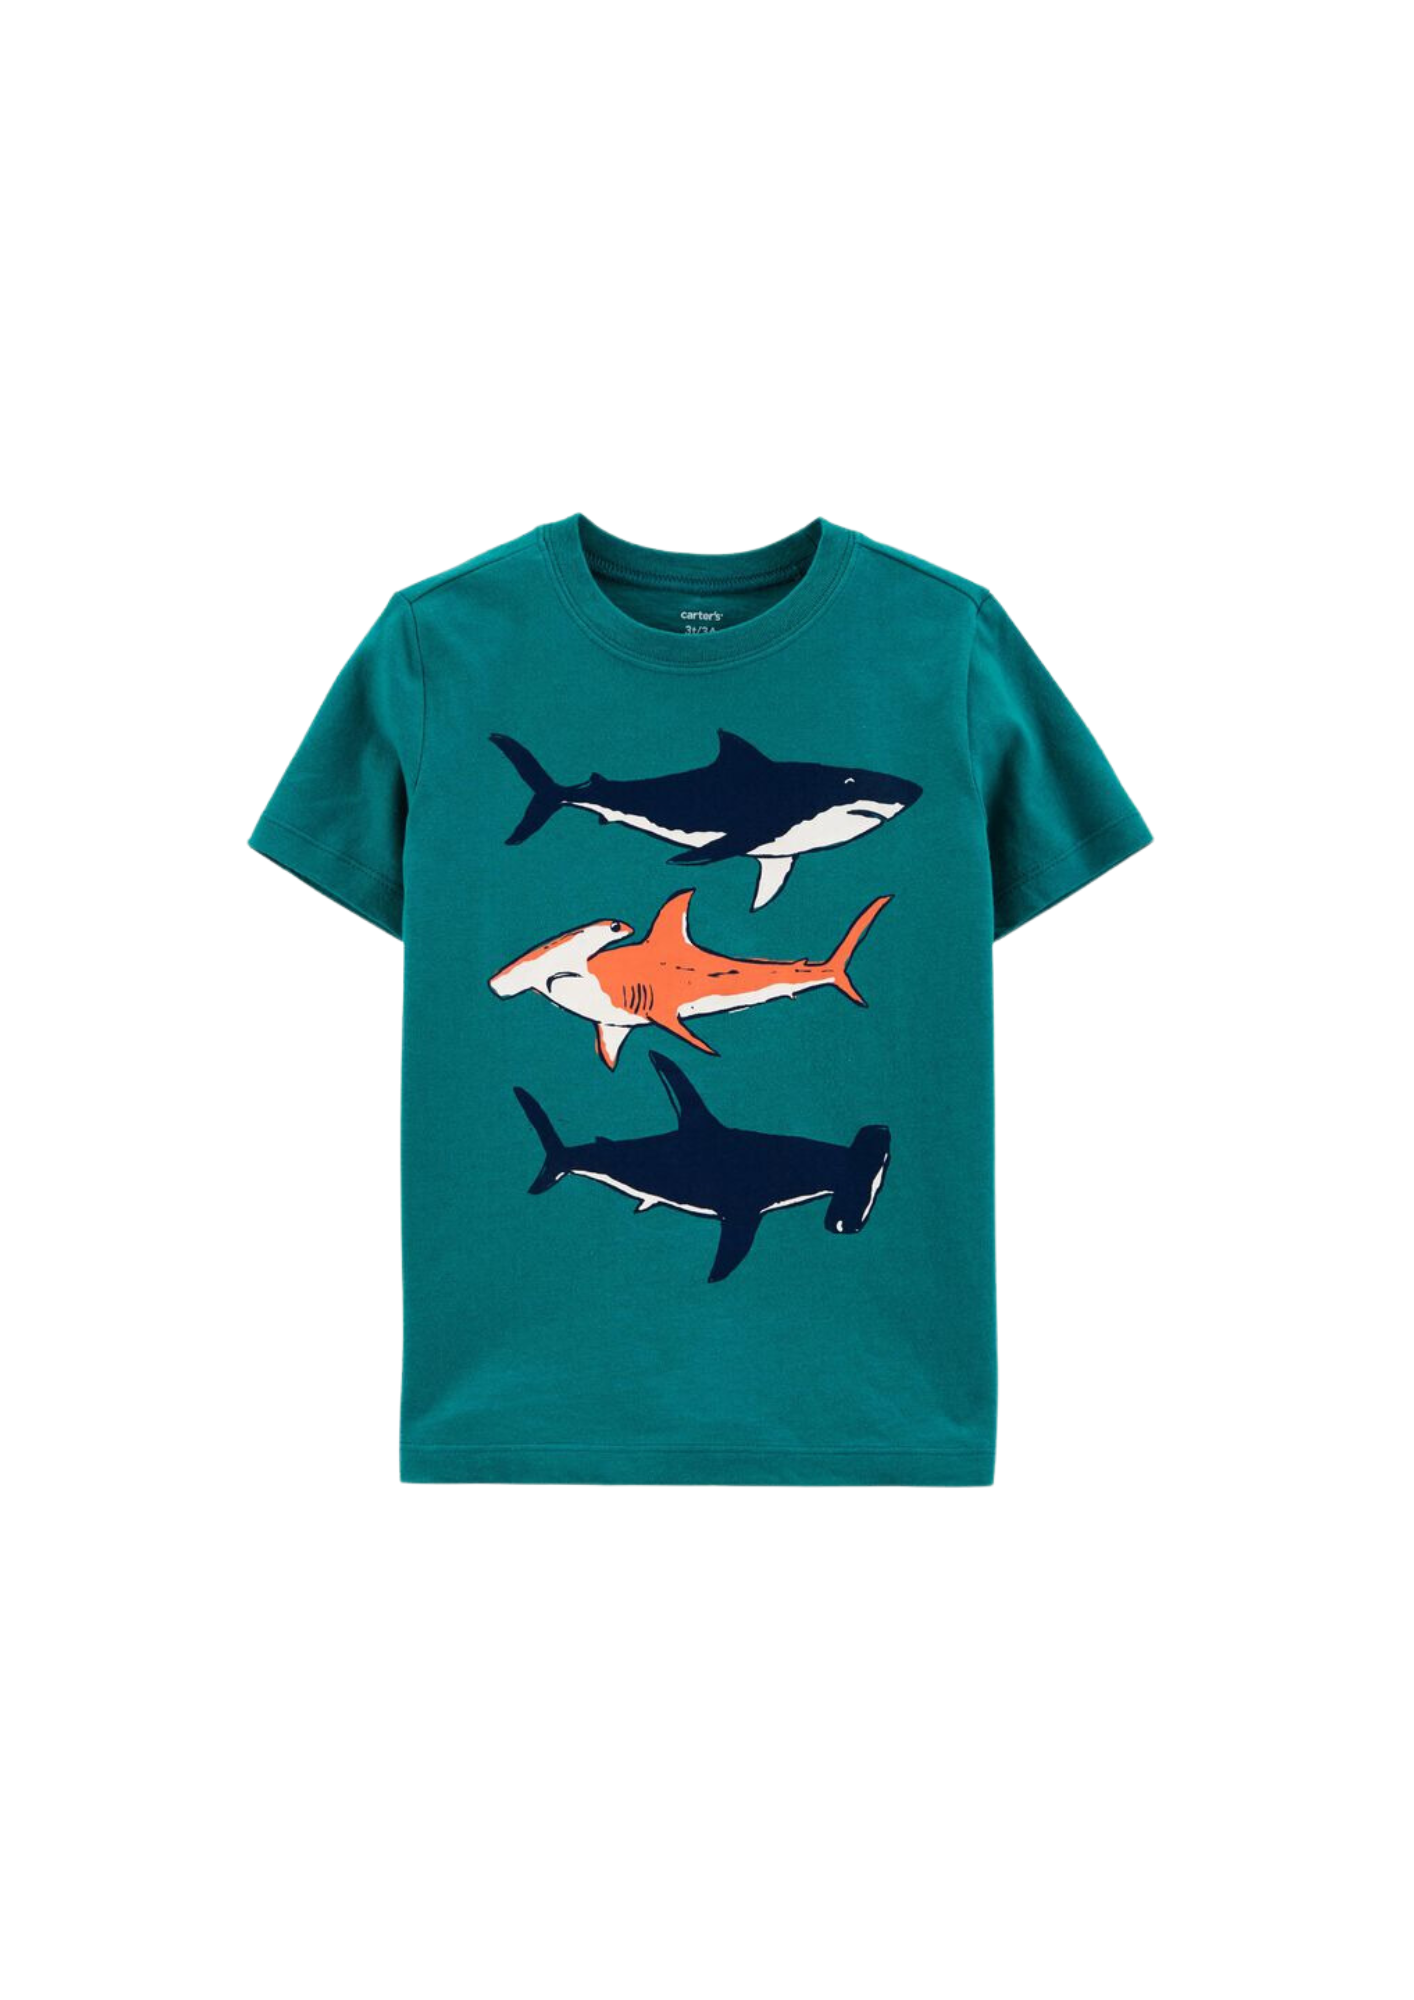 Carter's - Remera básica color verde diseño de tiburones